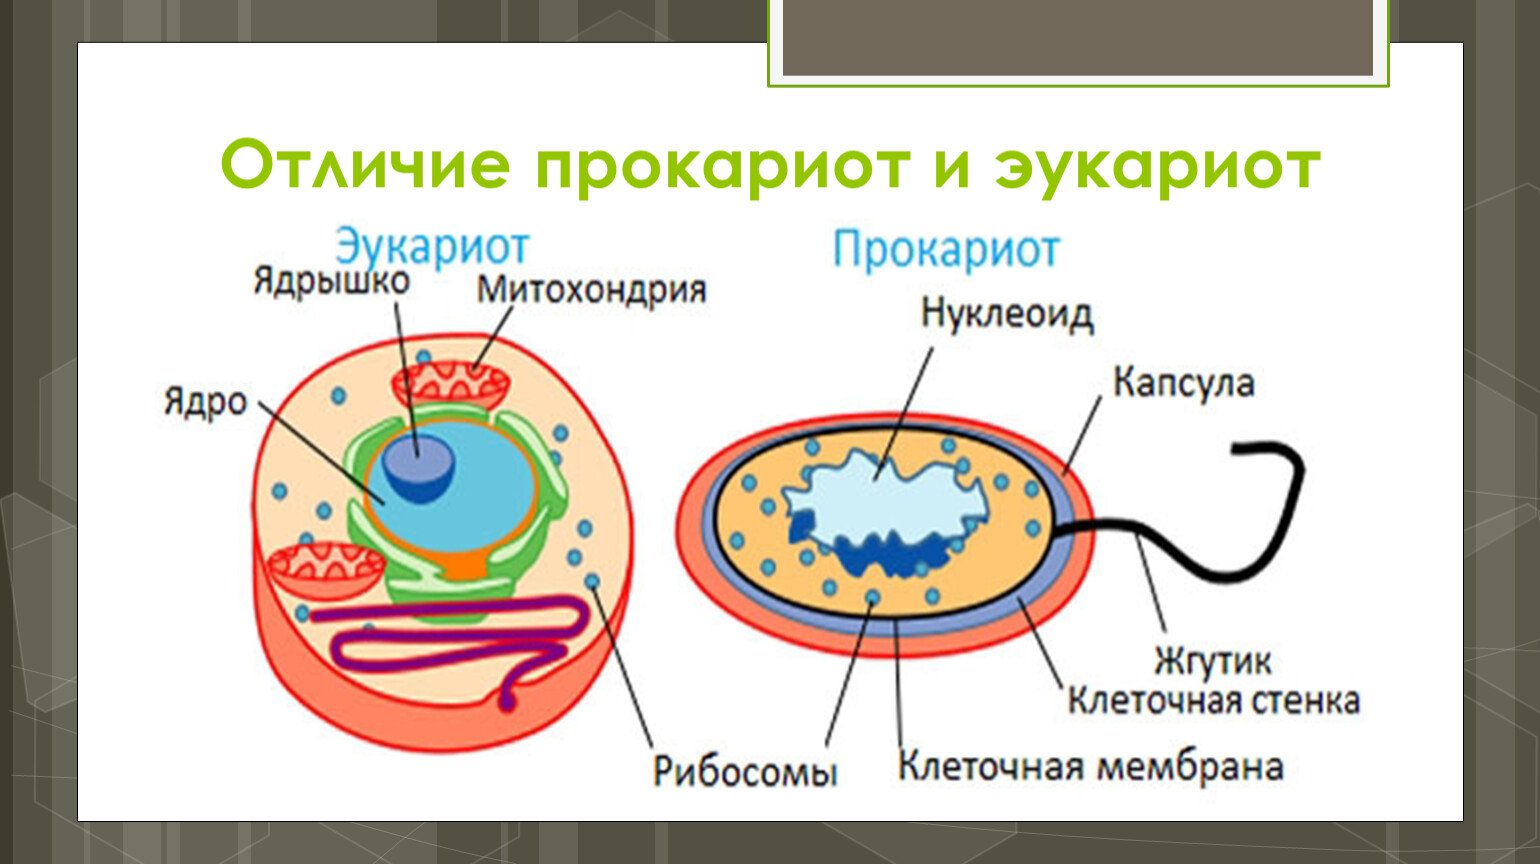 Эра прокариот какая эра. Отличие прокариотической клетки от эукариотической клетки. Строение прокариот и эукариот. Клетка бактерий и эукариот. Различие эукариот от прокариот.